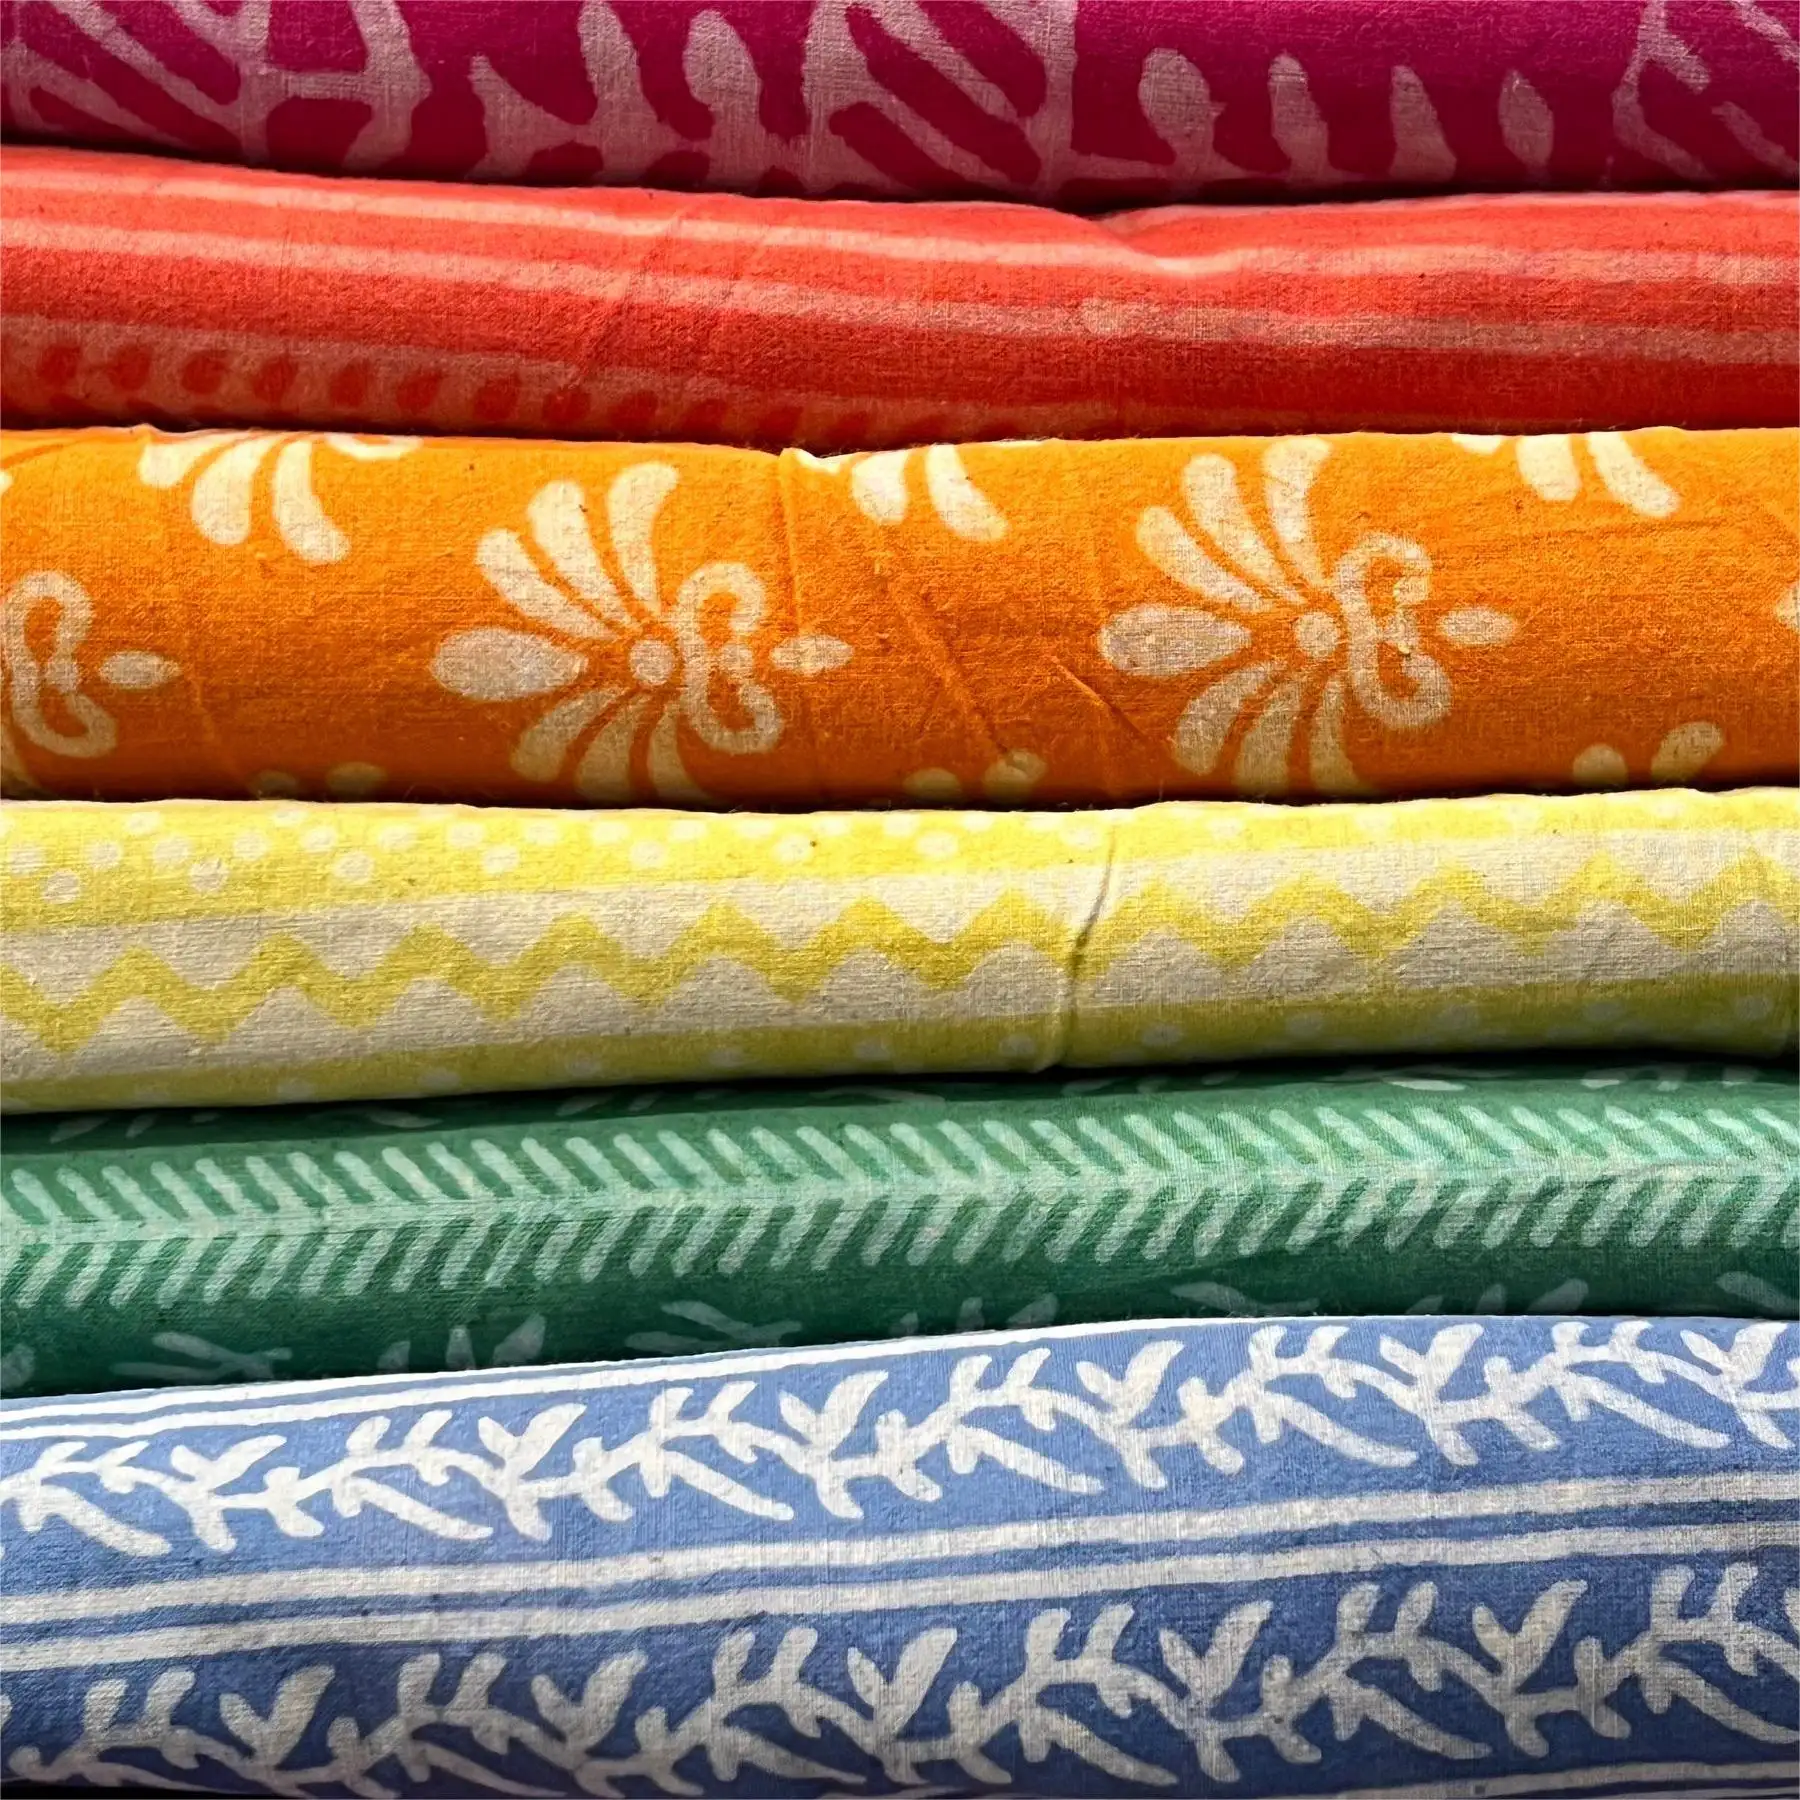 Mischbeutel aus indischem Blumendruck 100% reine Baumwolle Tuch Mischen und Abgleich Stoff für Damenbekleidung Vorhänge Kissen Kissen Taschen